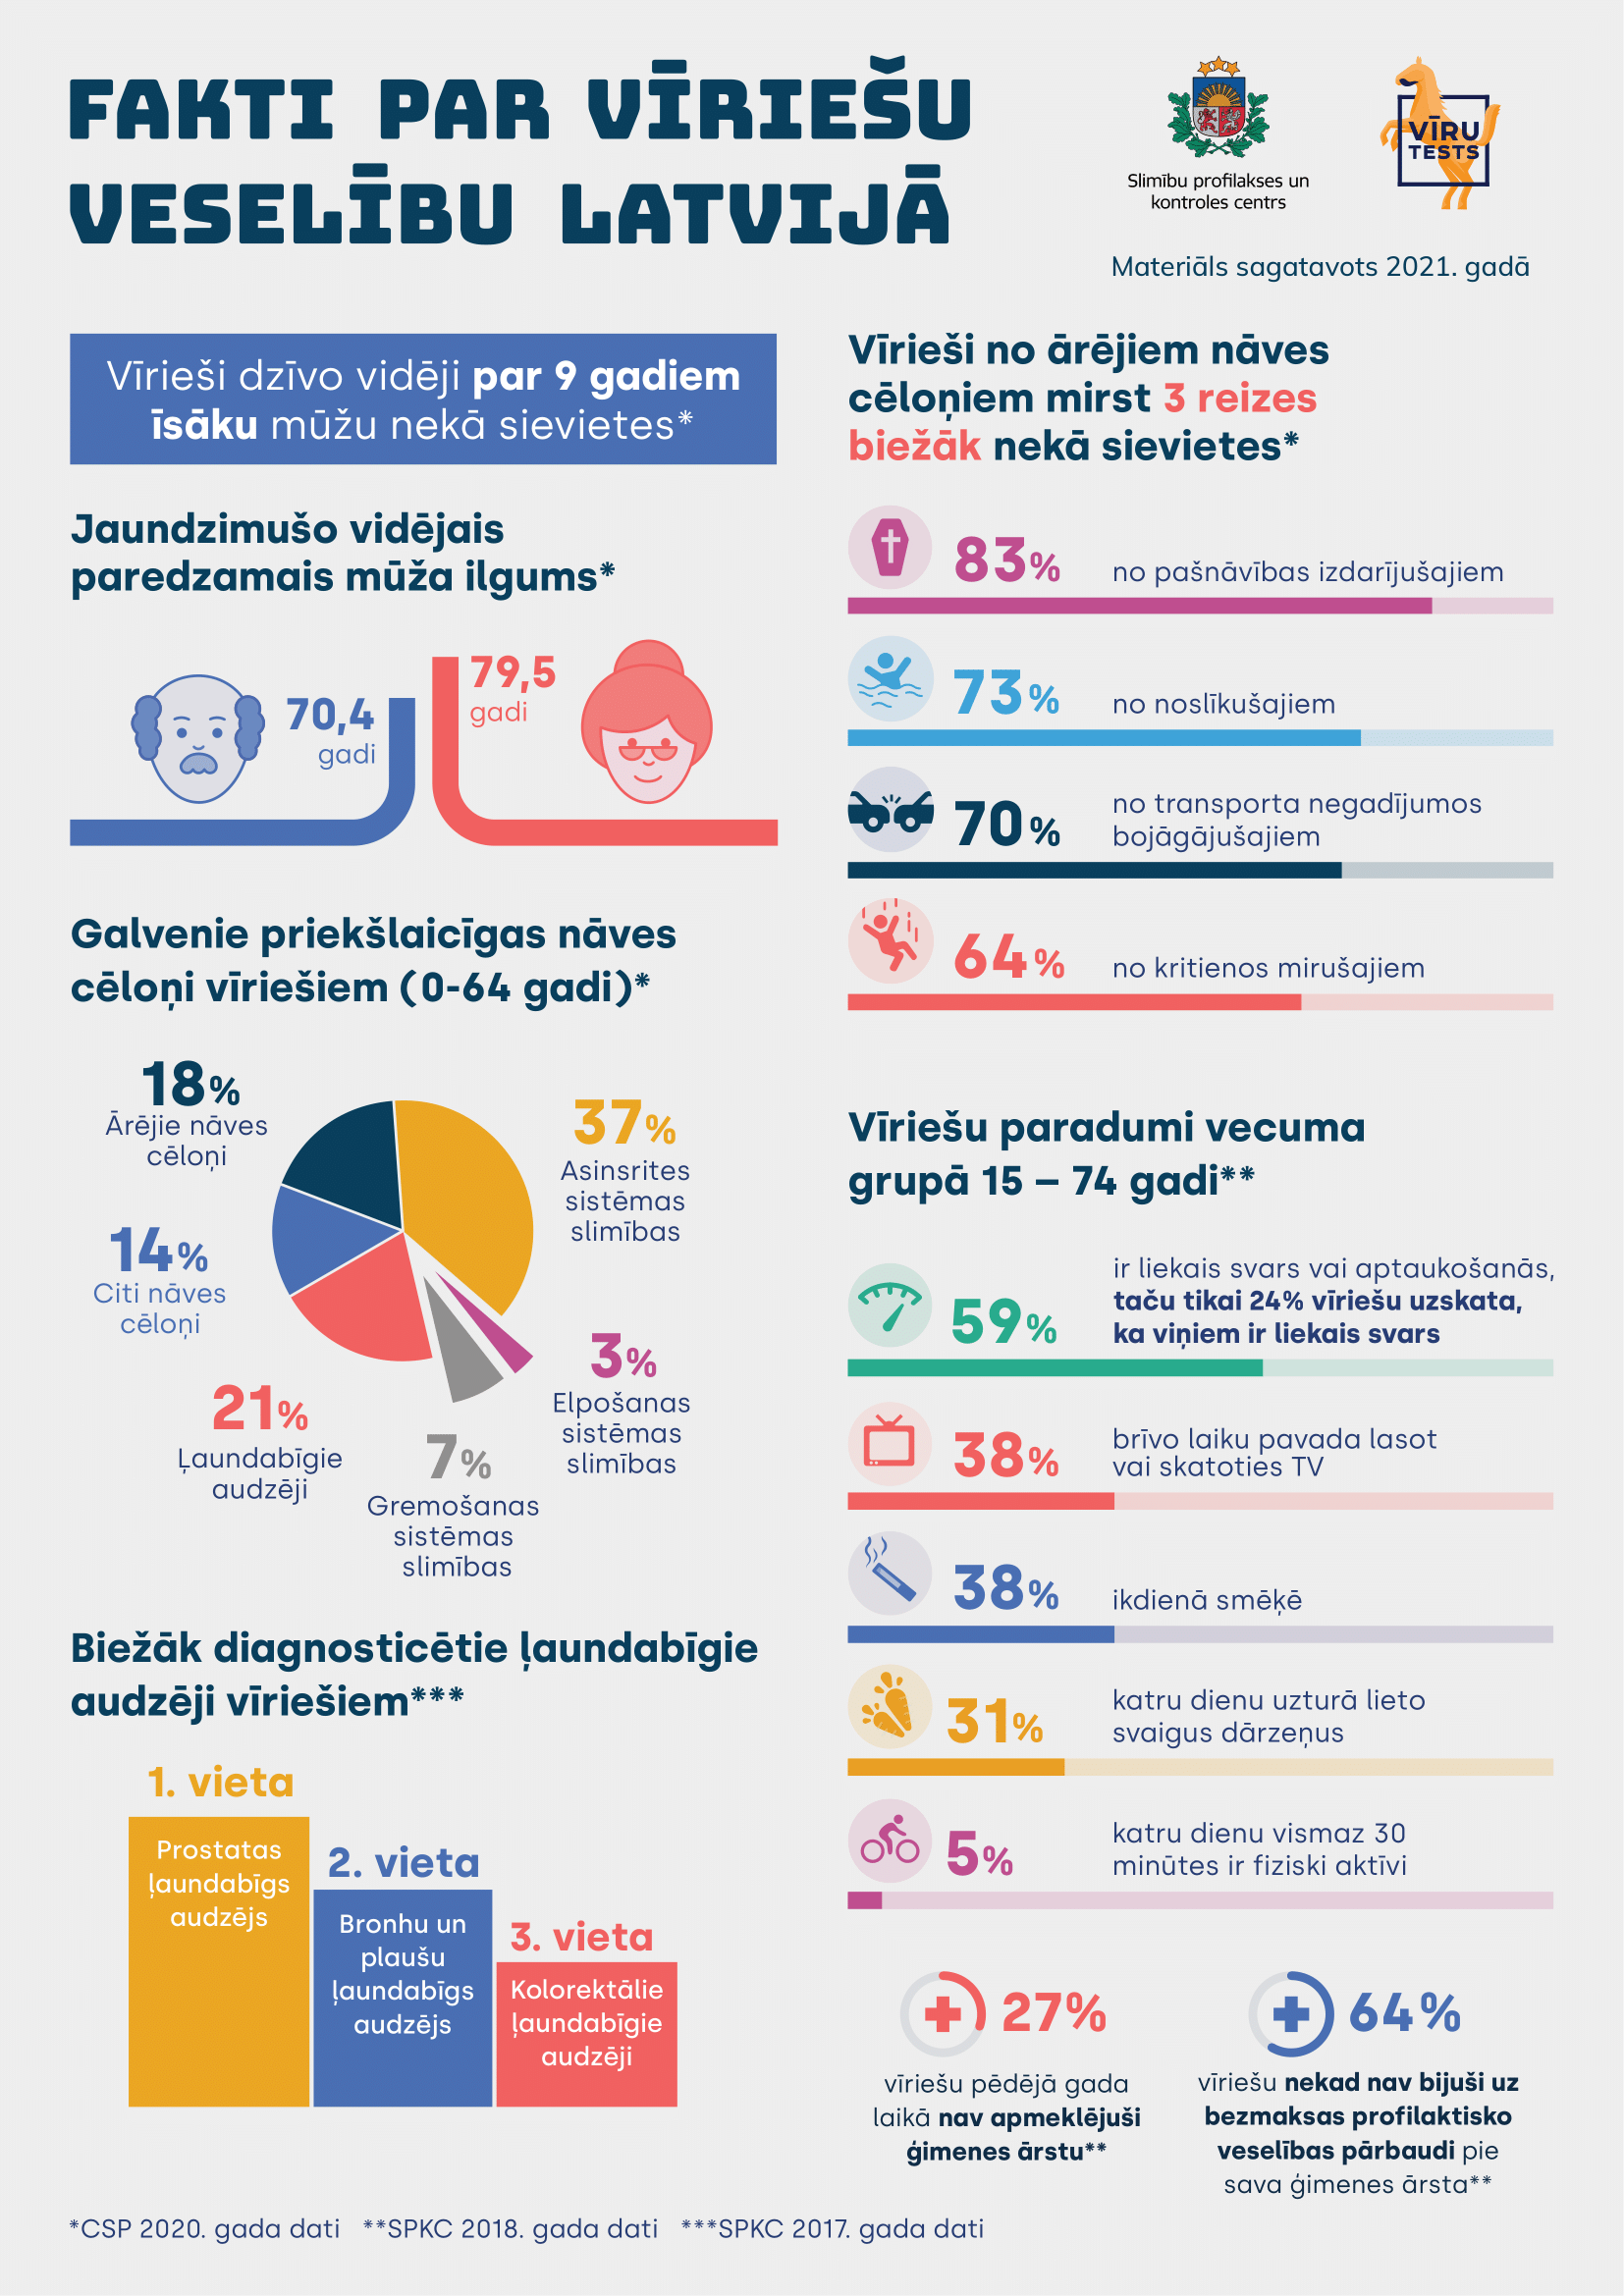 Infografika "Fakti par vīriešu veselību Latvijā"